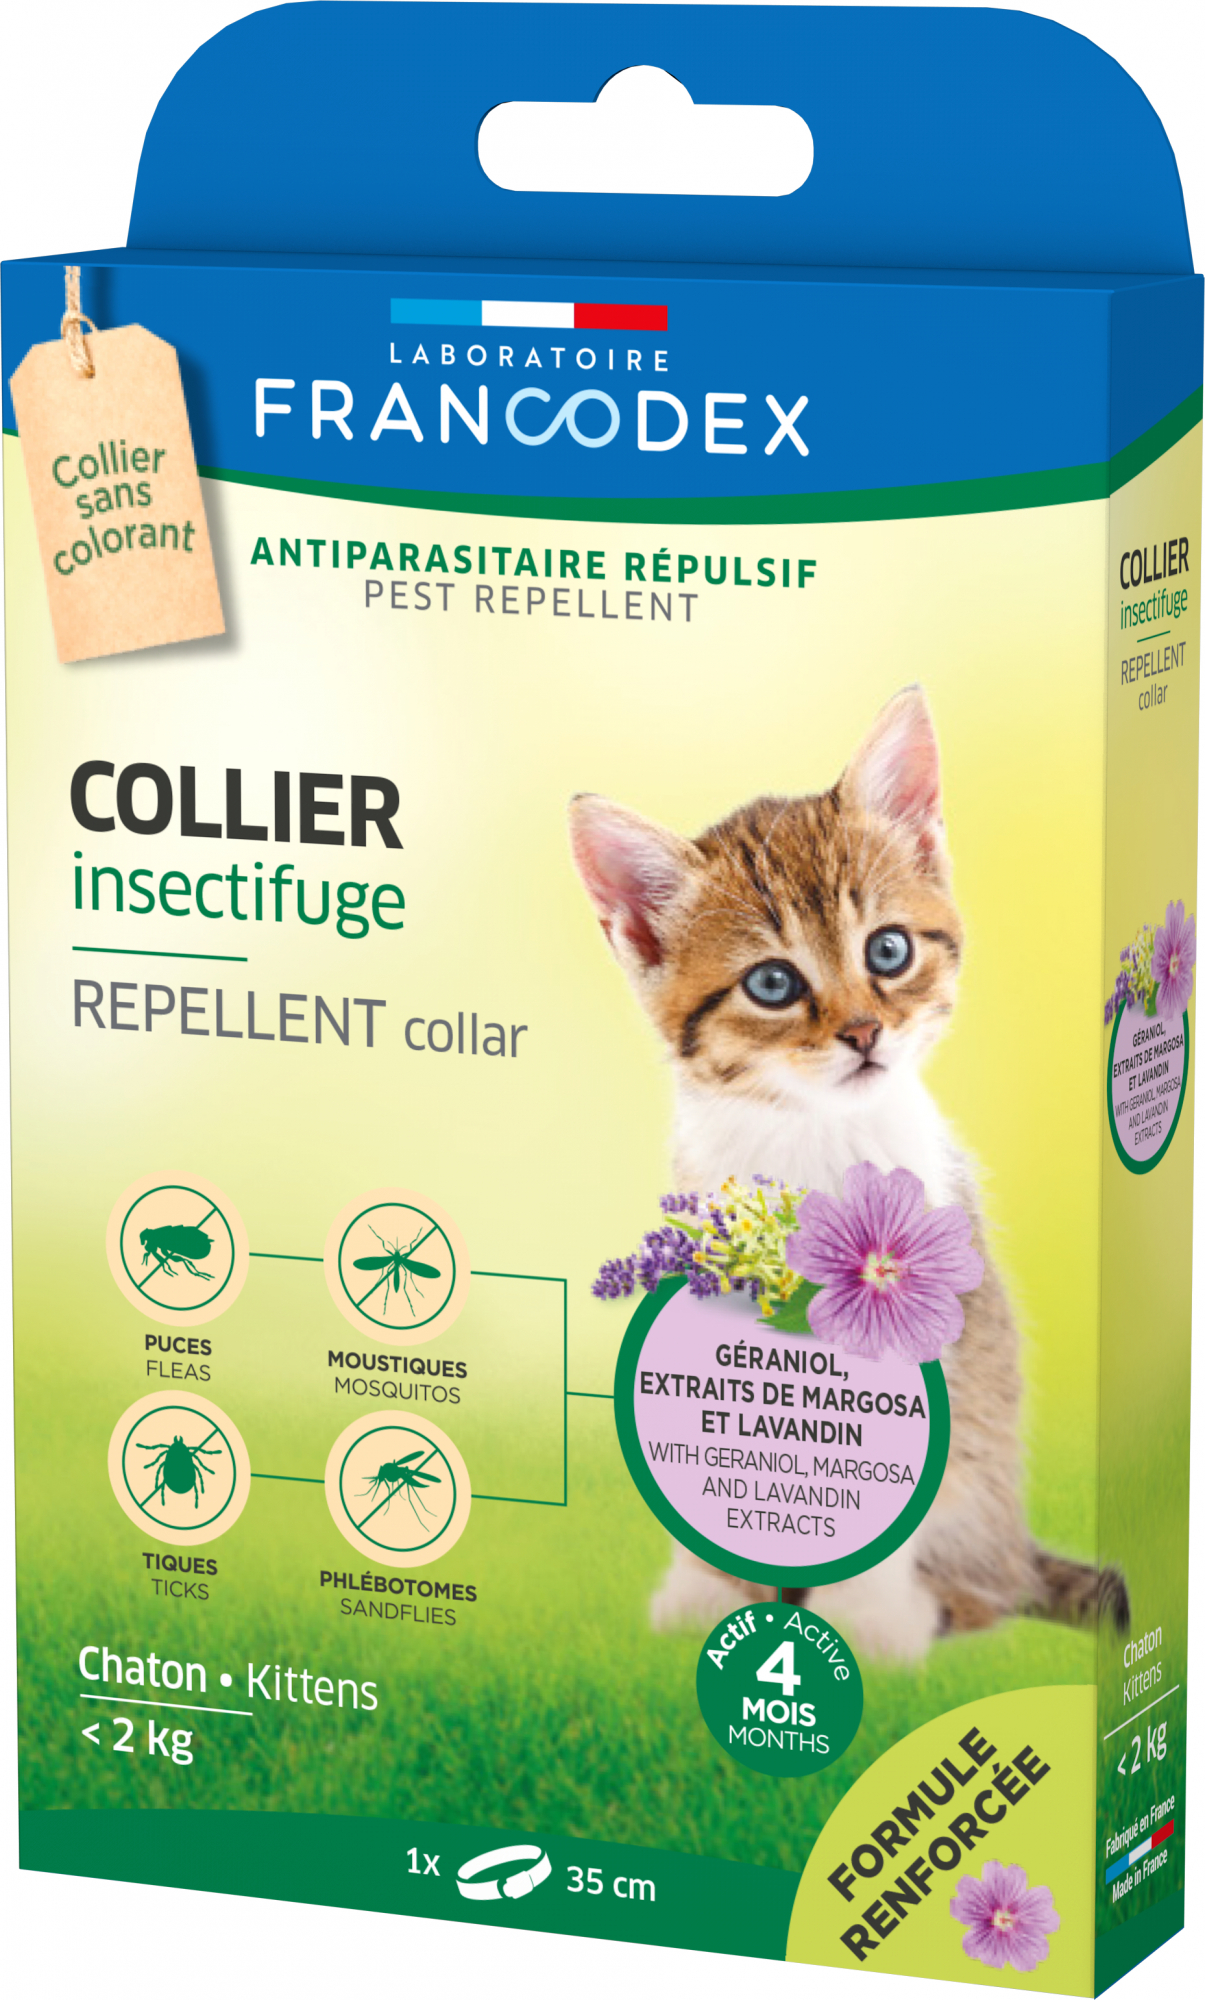 Collari anti-insetto Francodex per gatti e gattini